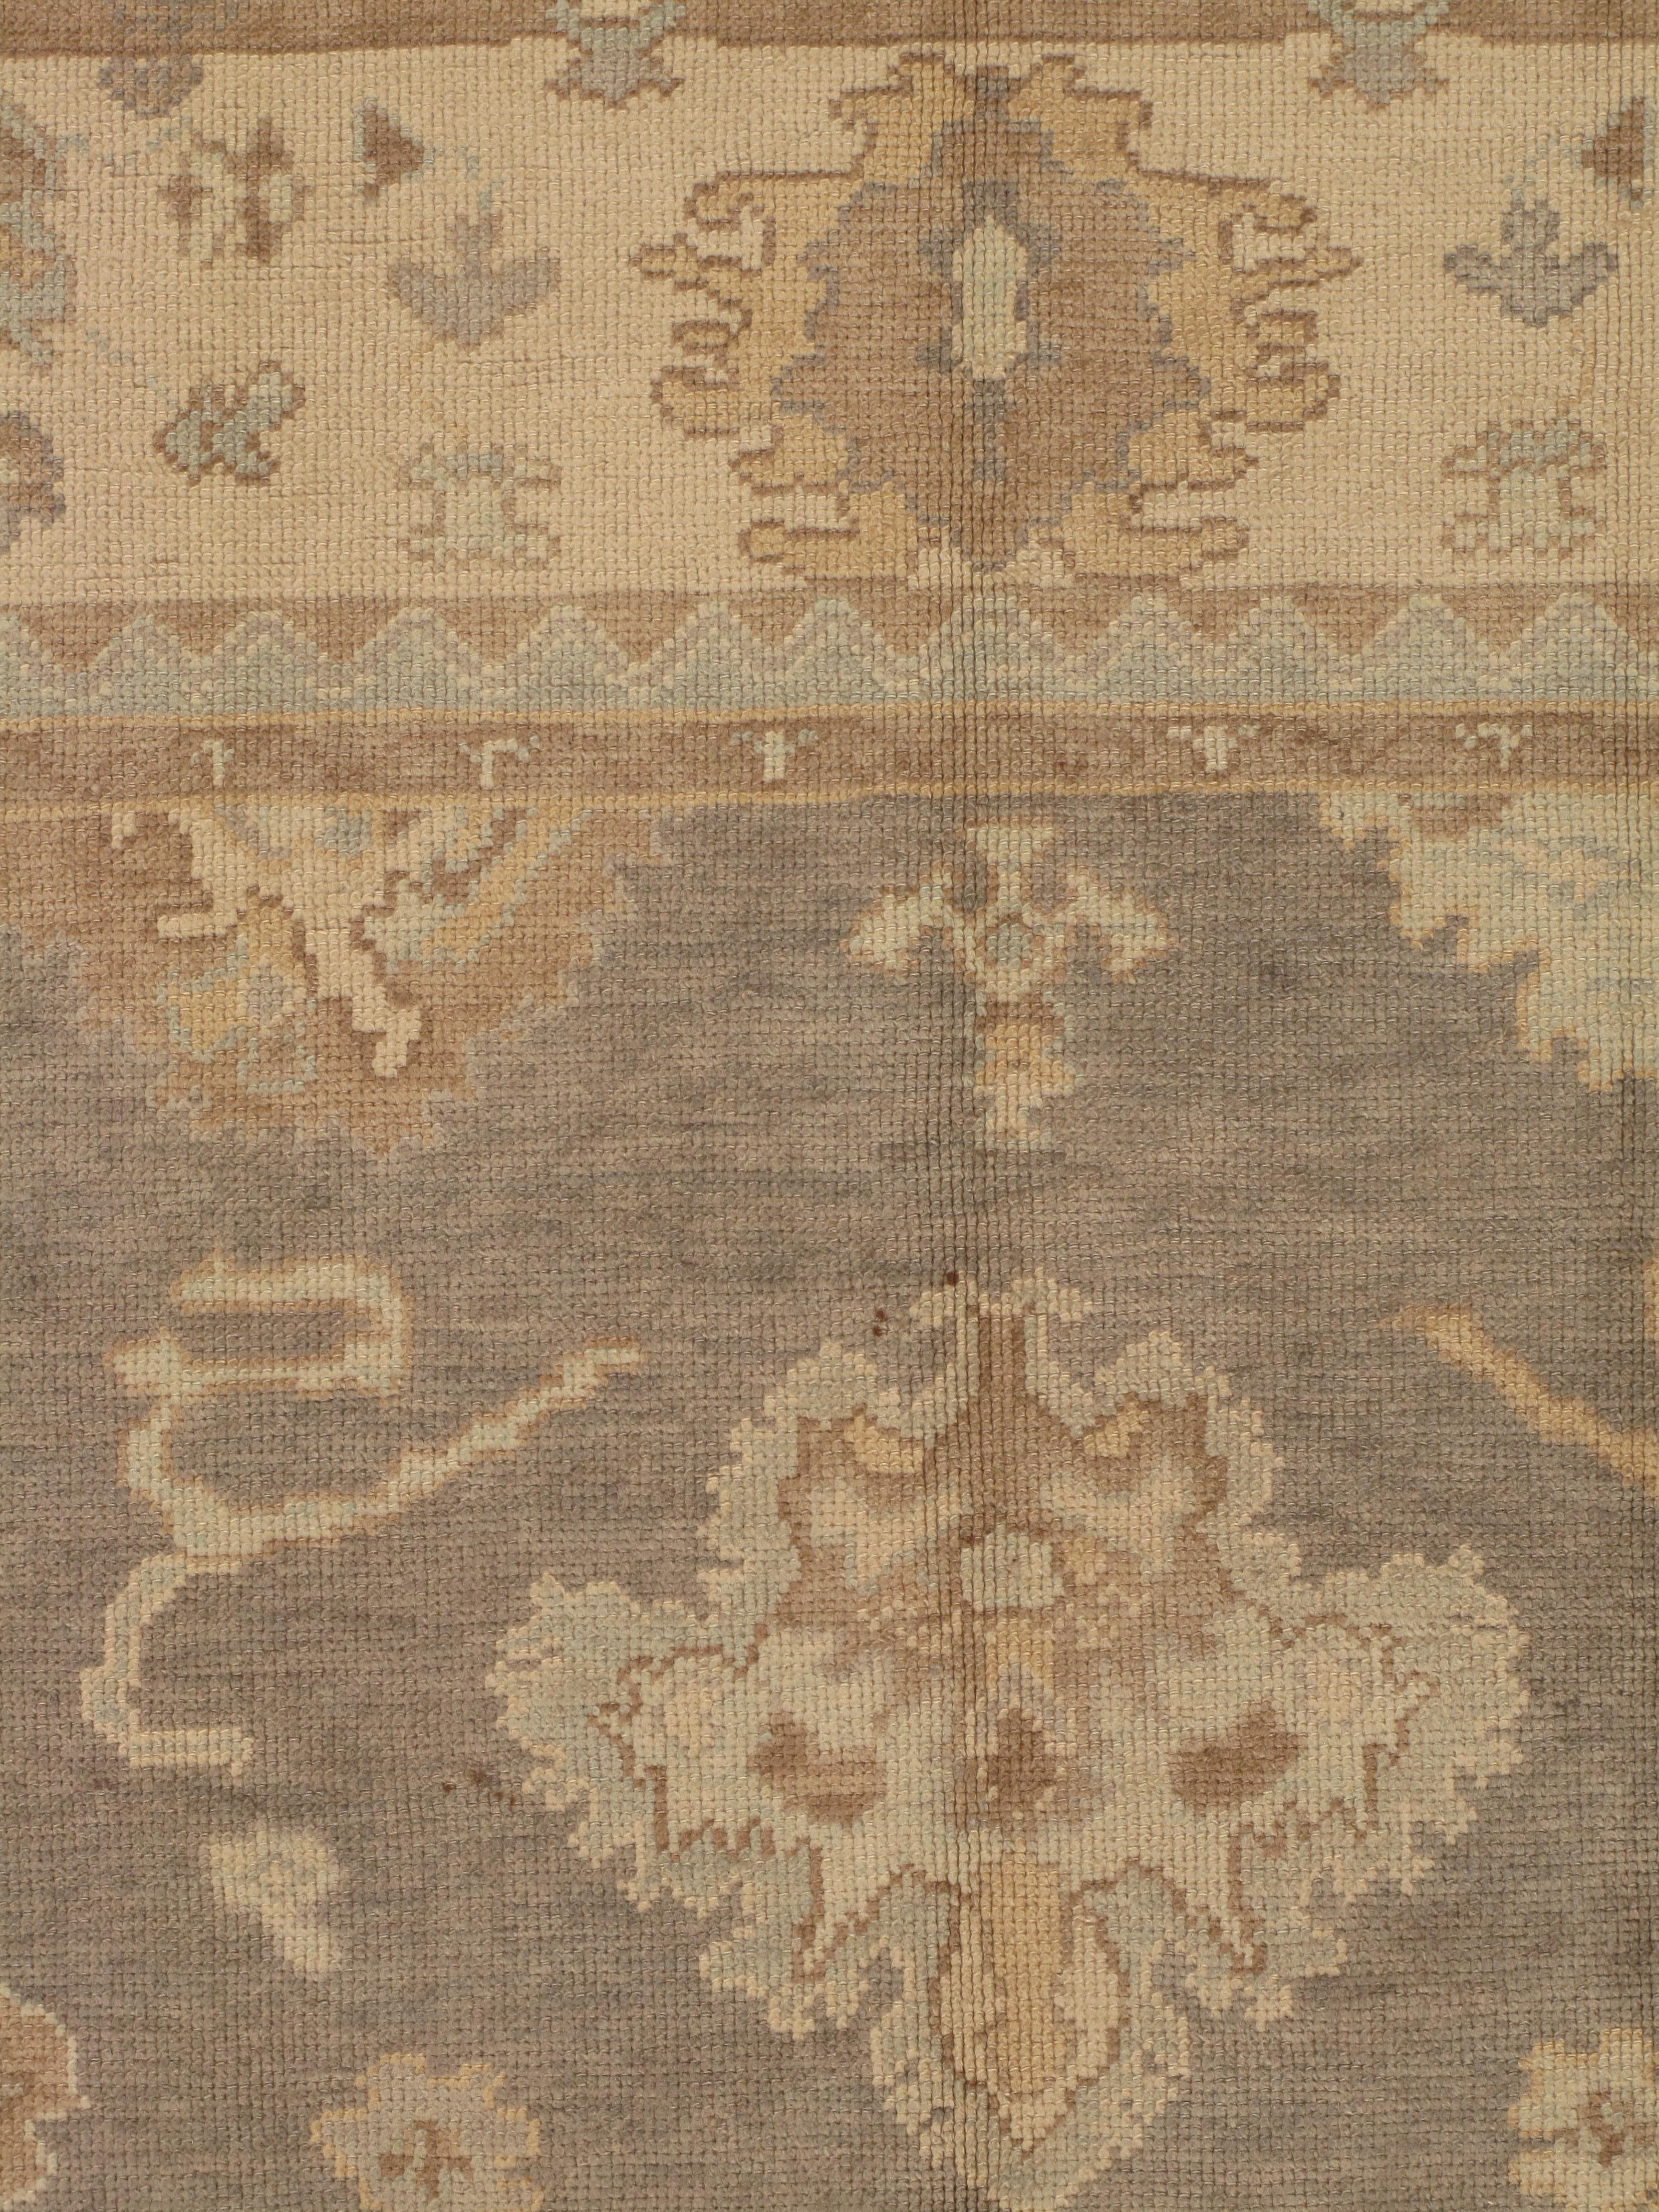 Oushak-Teppiche, auch als Ushak- oder Usak-Teppiche bekannt, sind für ihre zeitlose Schönheit, ihre reiche Geschichte und ihre außergewöhnliche Handwerkskunst bekannt. Diese Teppiche stammen aus der Region Oushak in der Westtürkei und werden seit